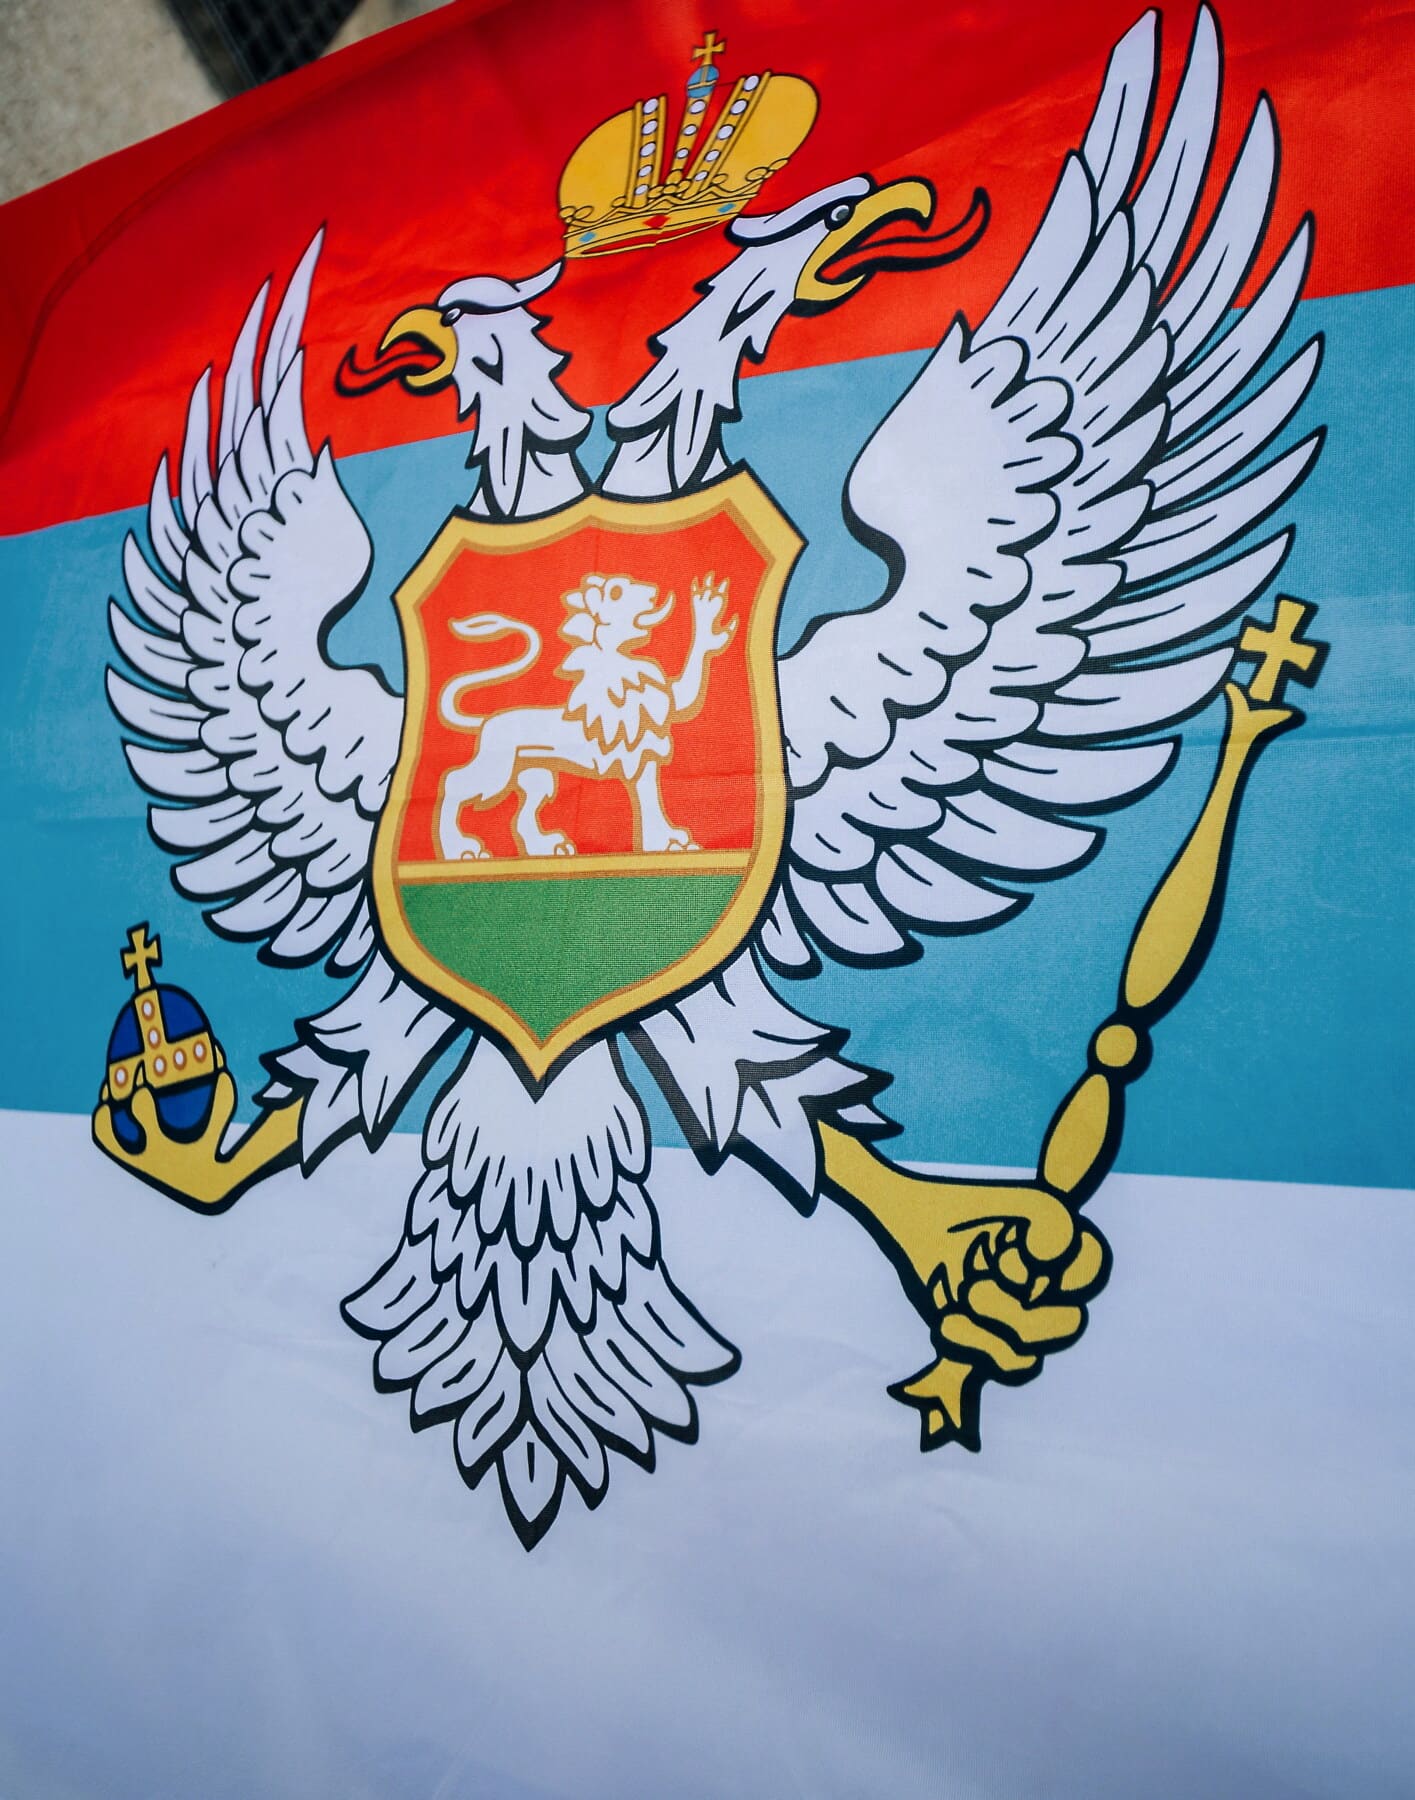 Serbia, kotka, heraldiikka, kilpi, kuva, tunnus, lippu, isänmaallisuus, suunnittelu, ritari